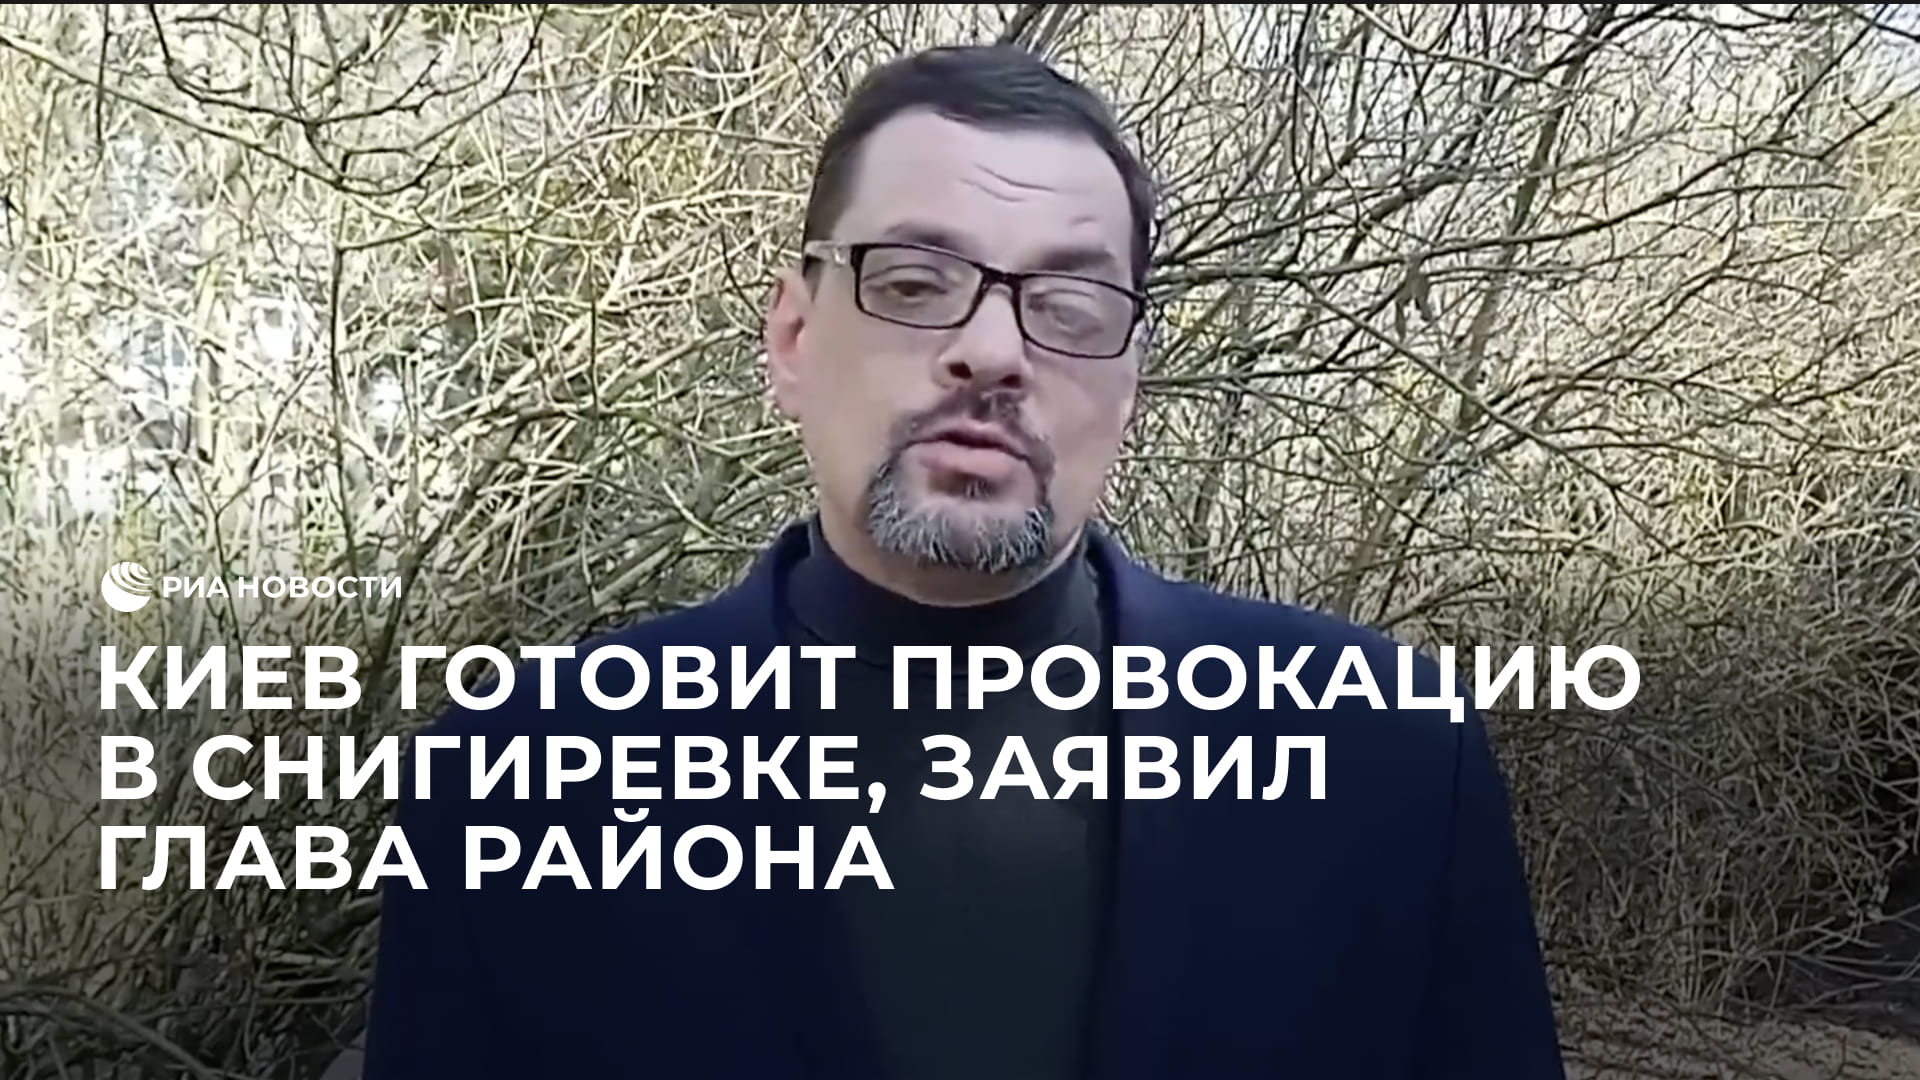 Киев готовит провокацию с убитыми людьми в Снигиревке, заявил глава района